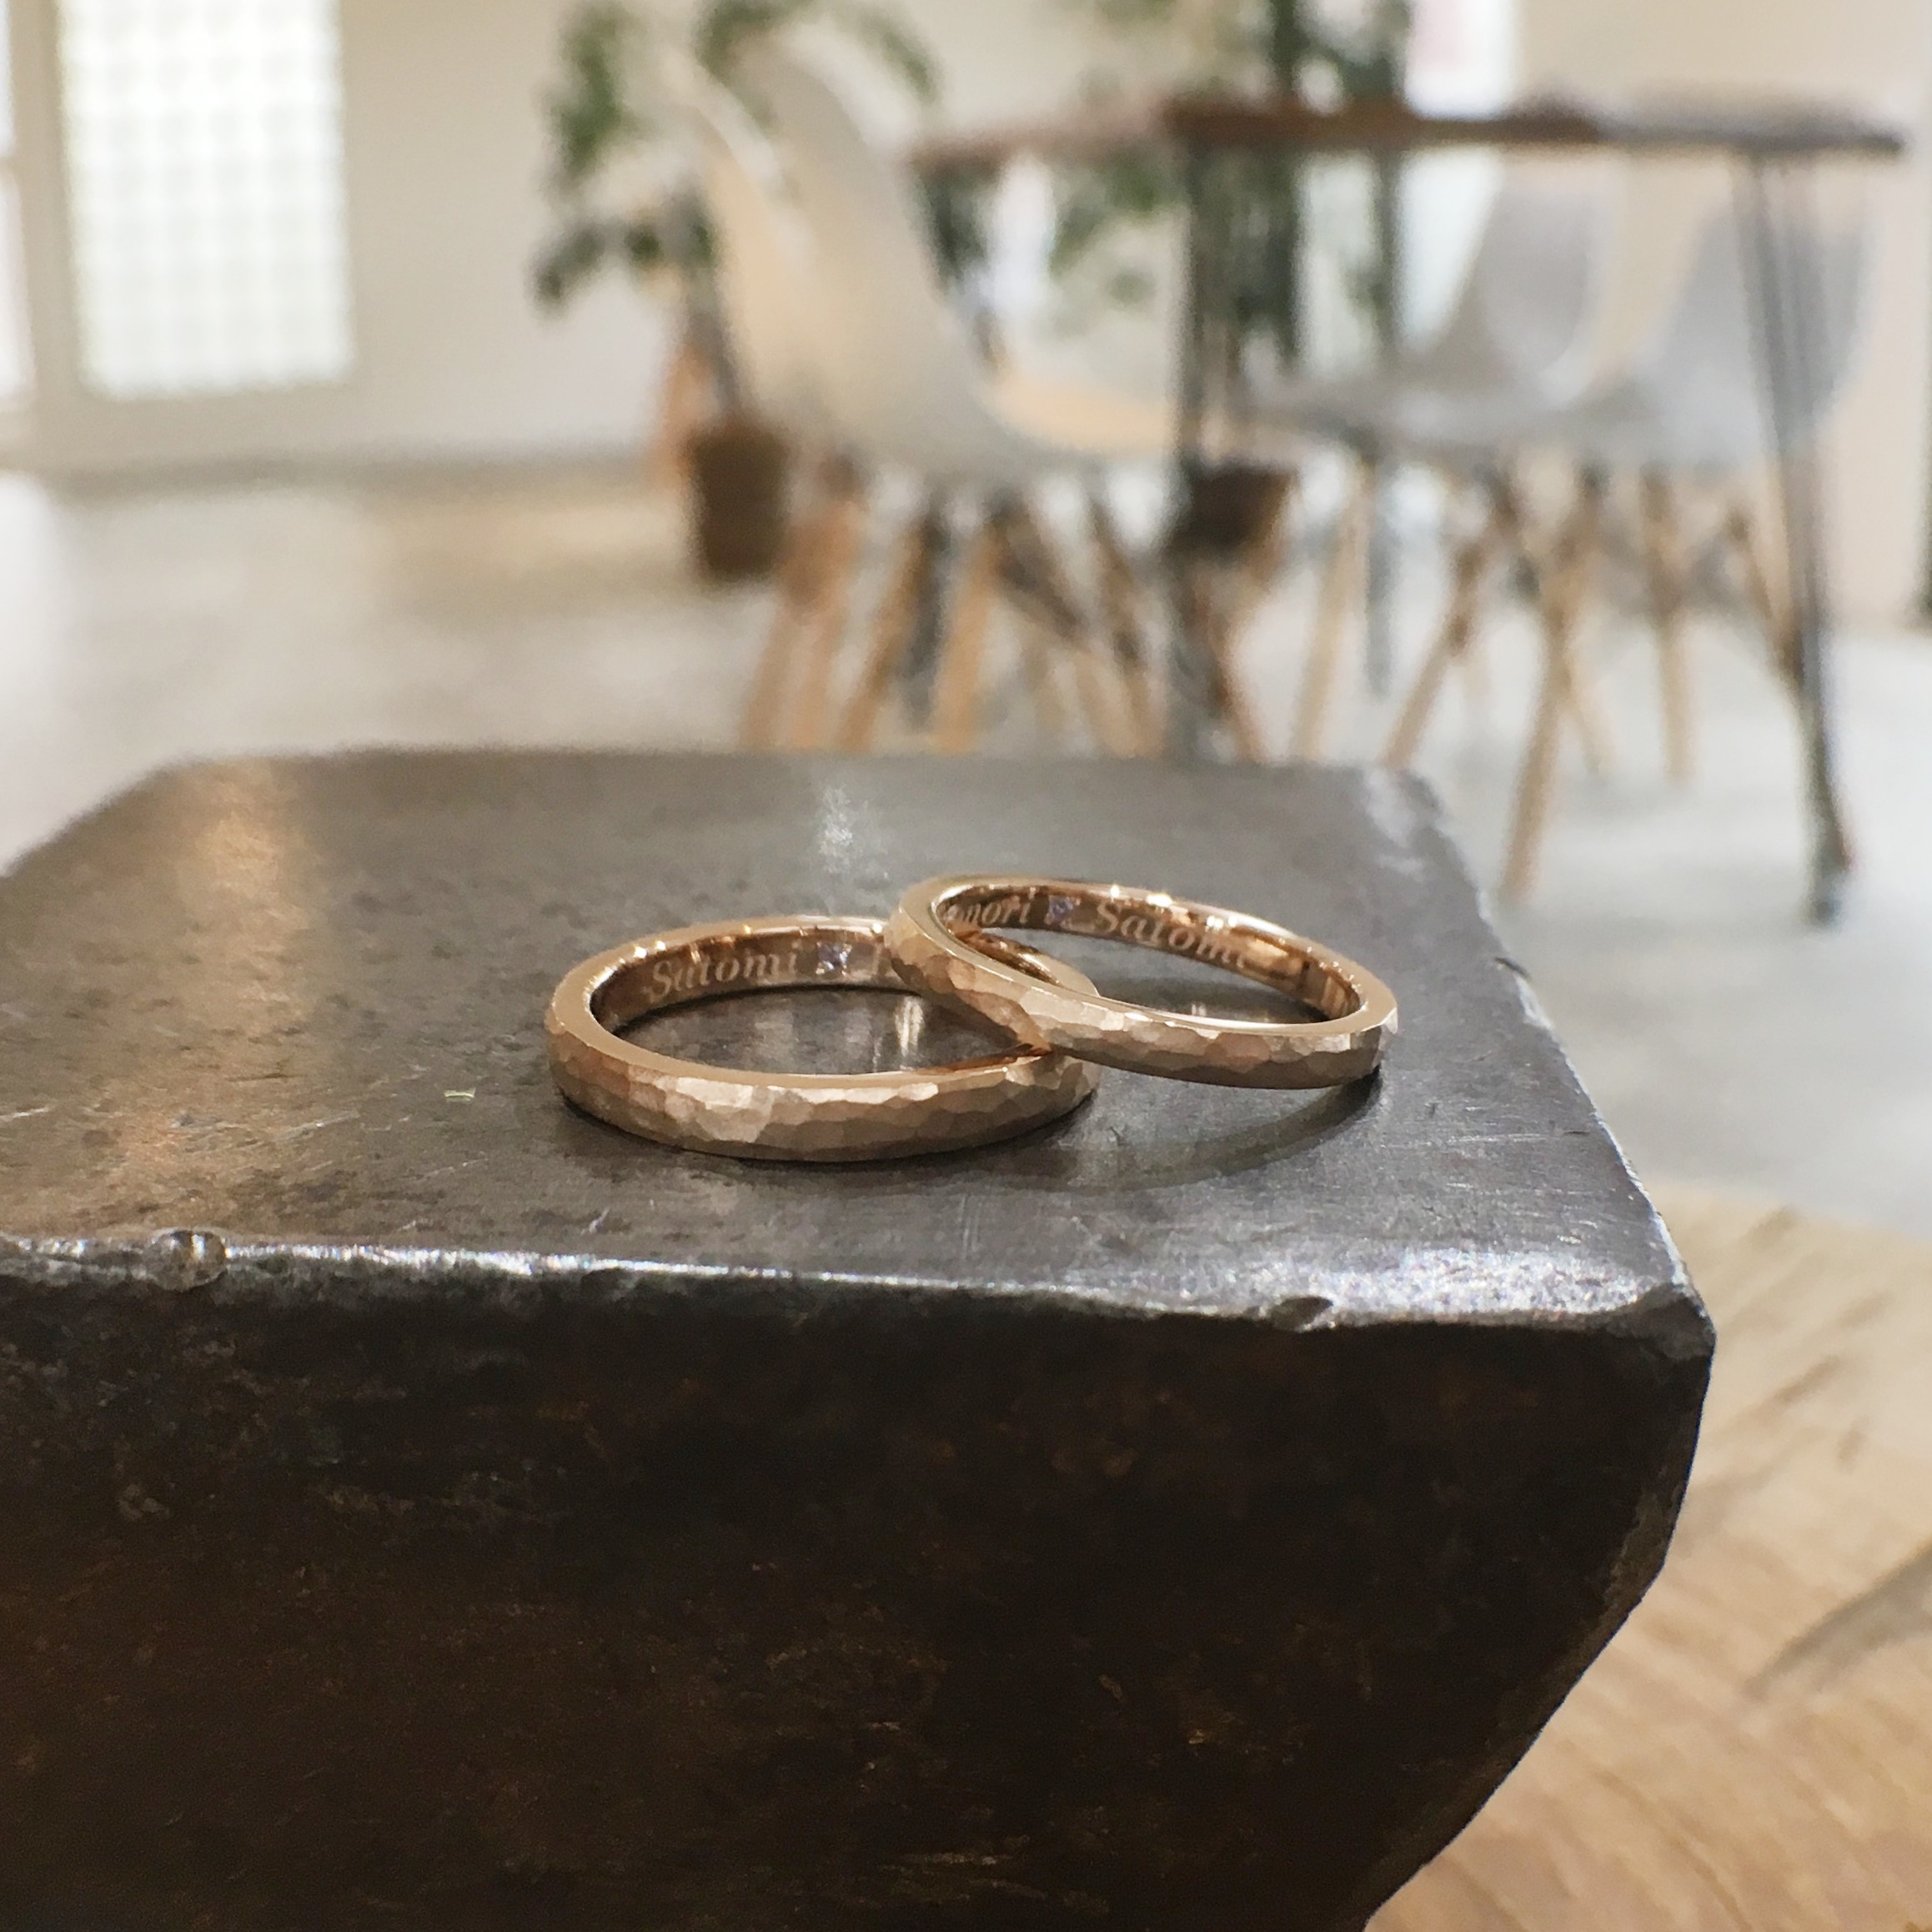 鎚目を施したアンティーク調の結婚指輪